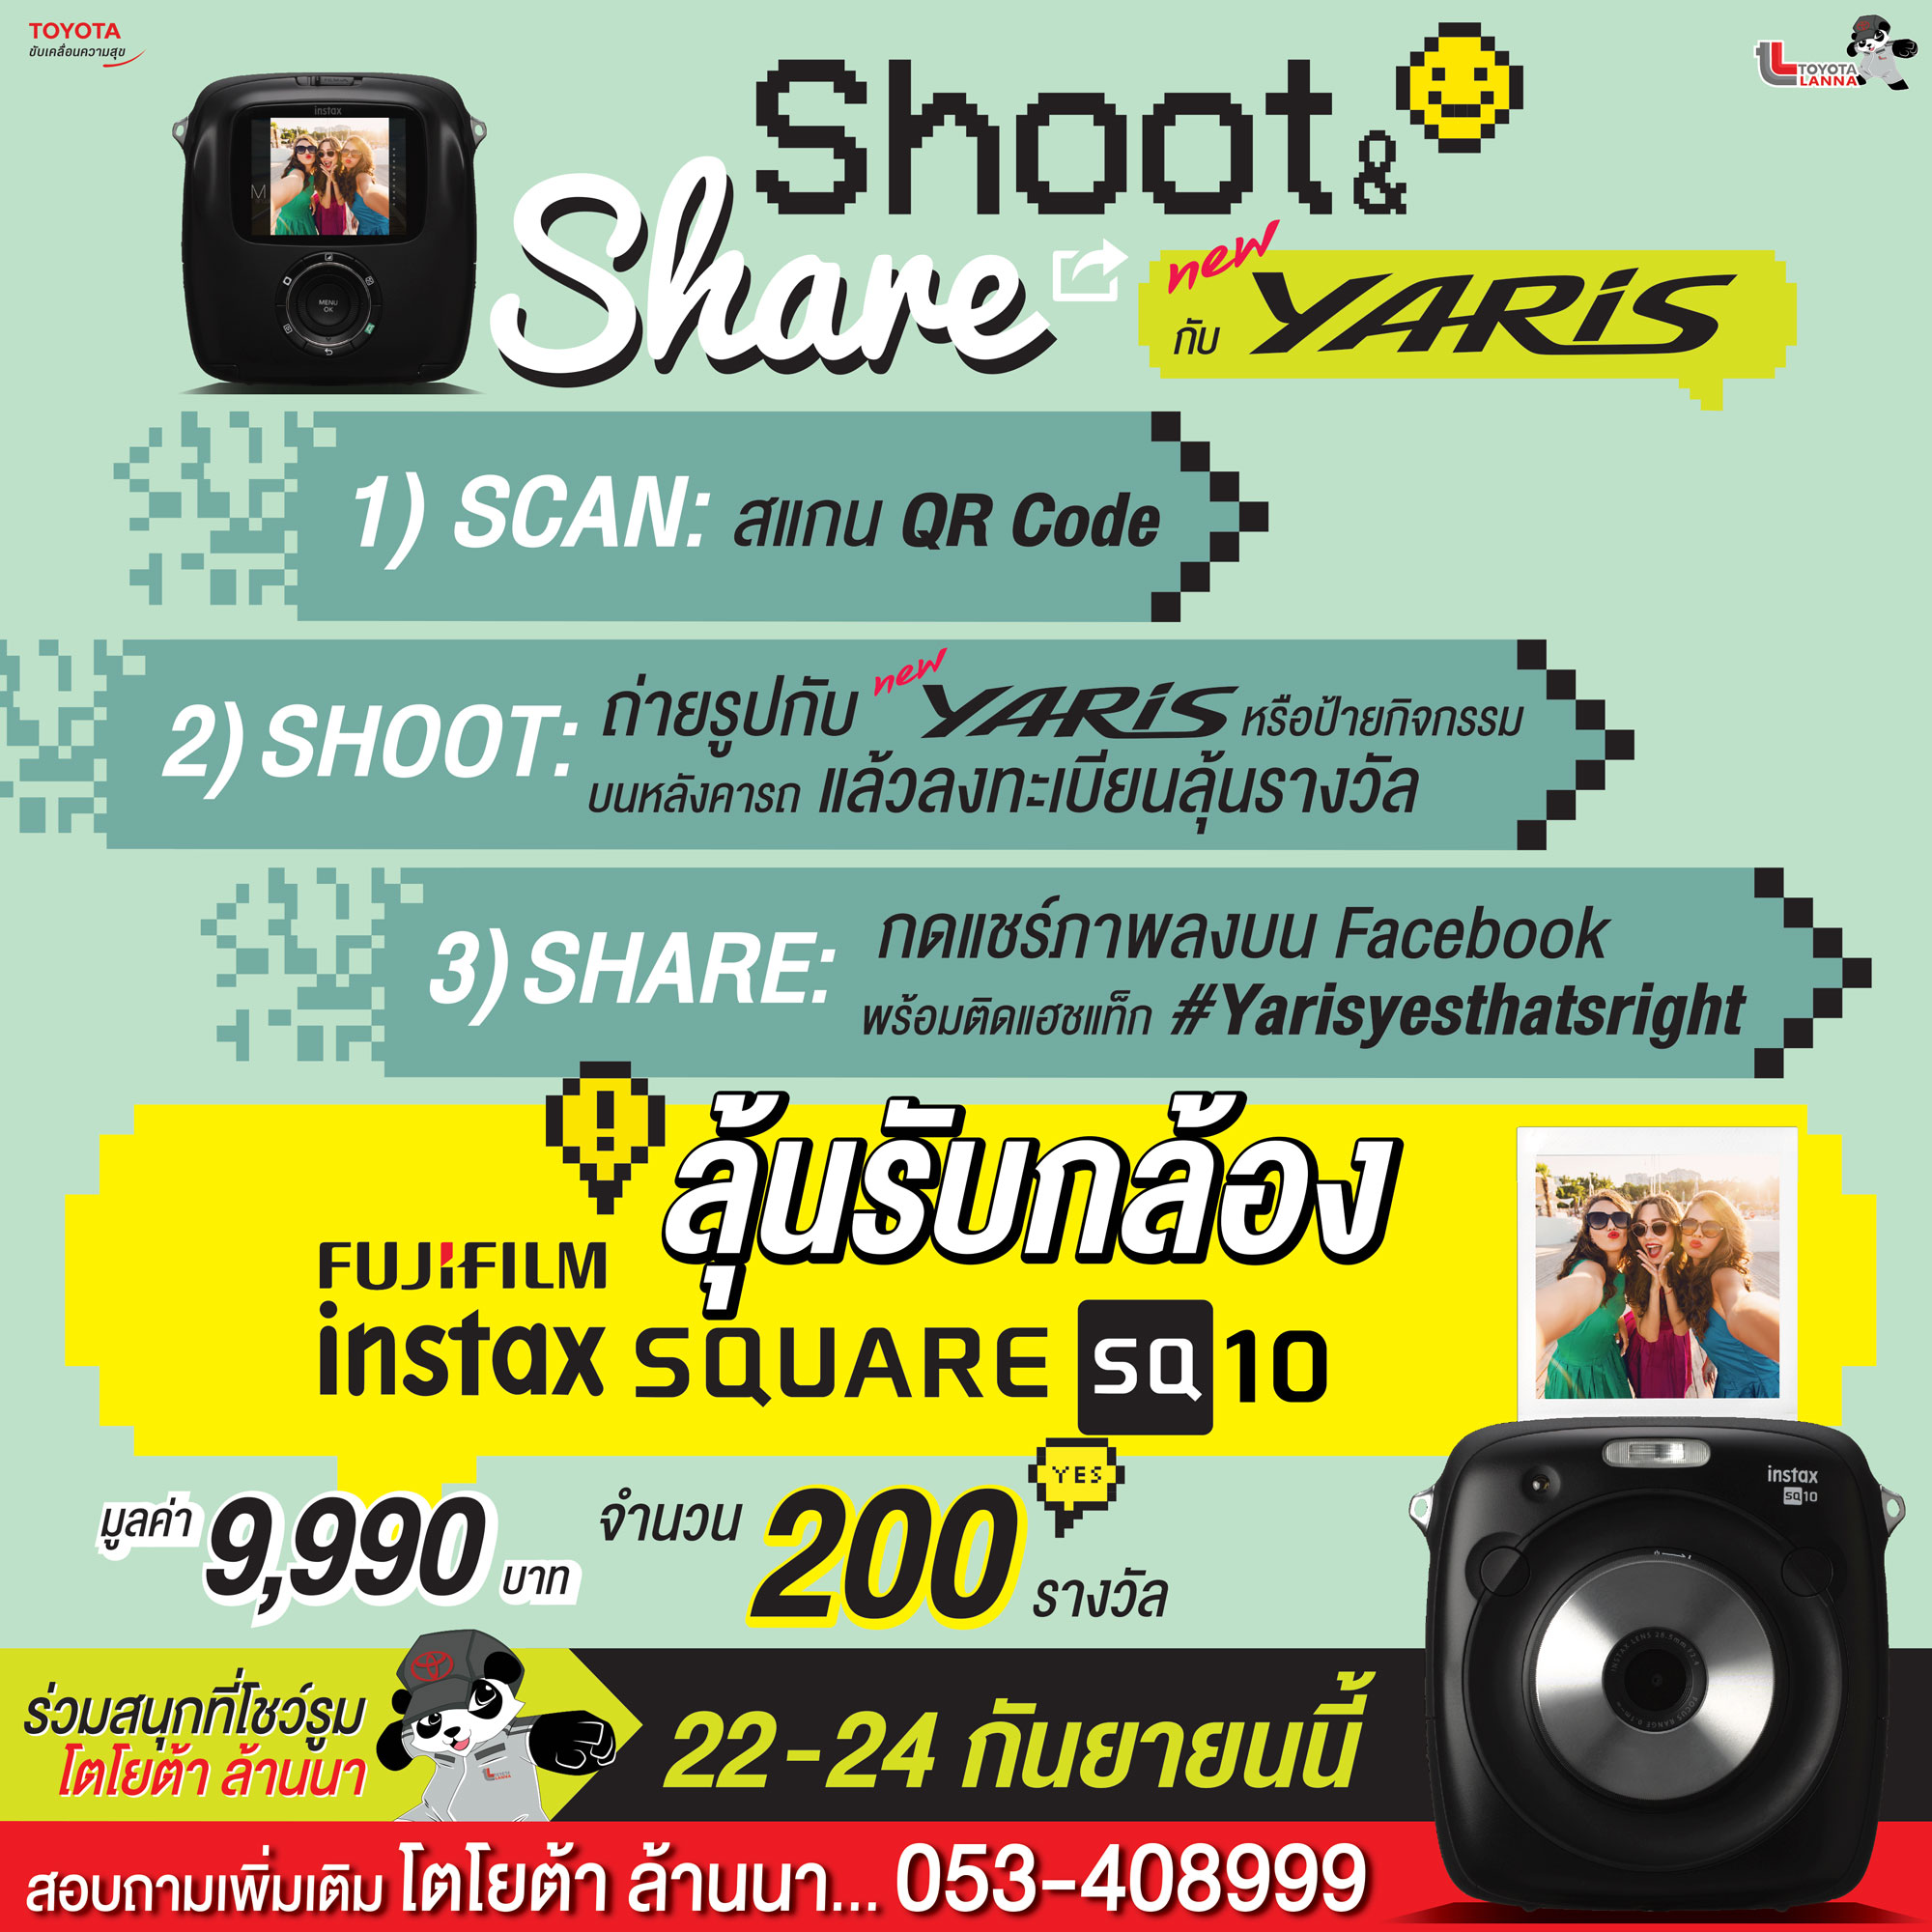 กิจกรรม Shoot & Share กับ New YARIS